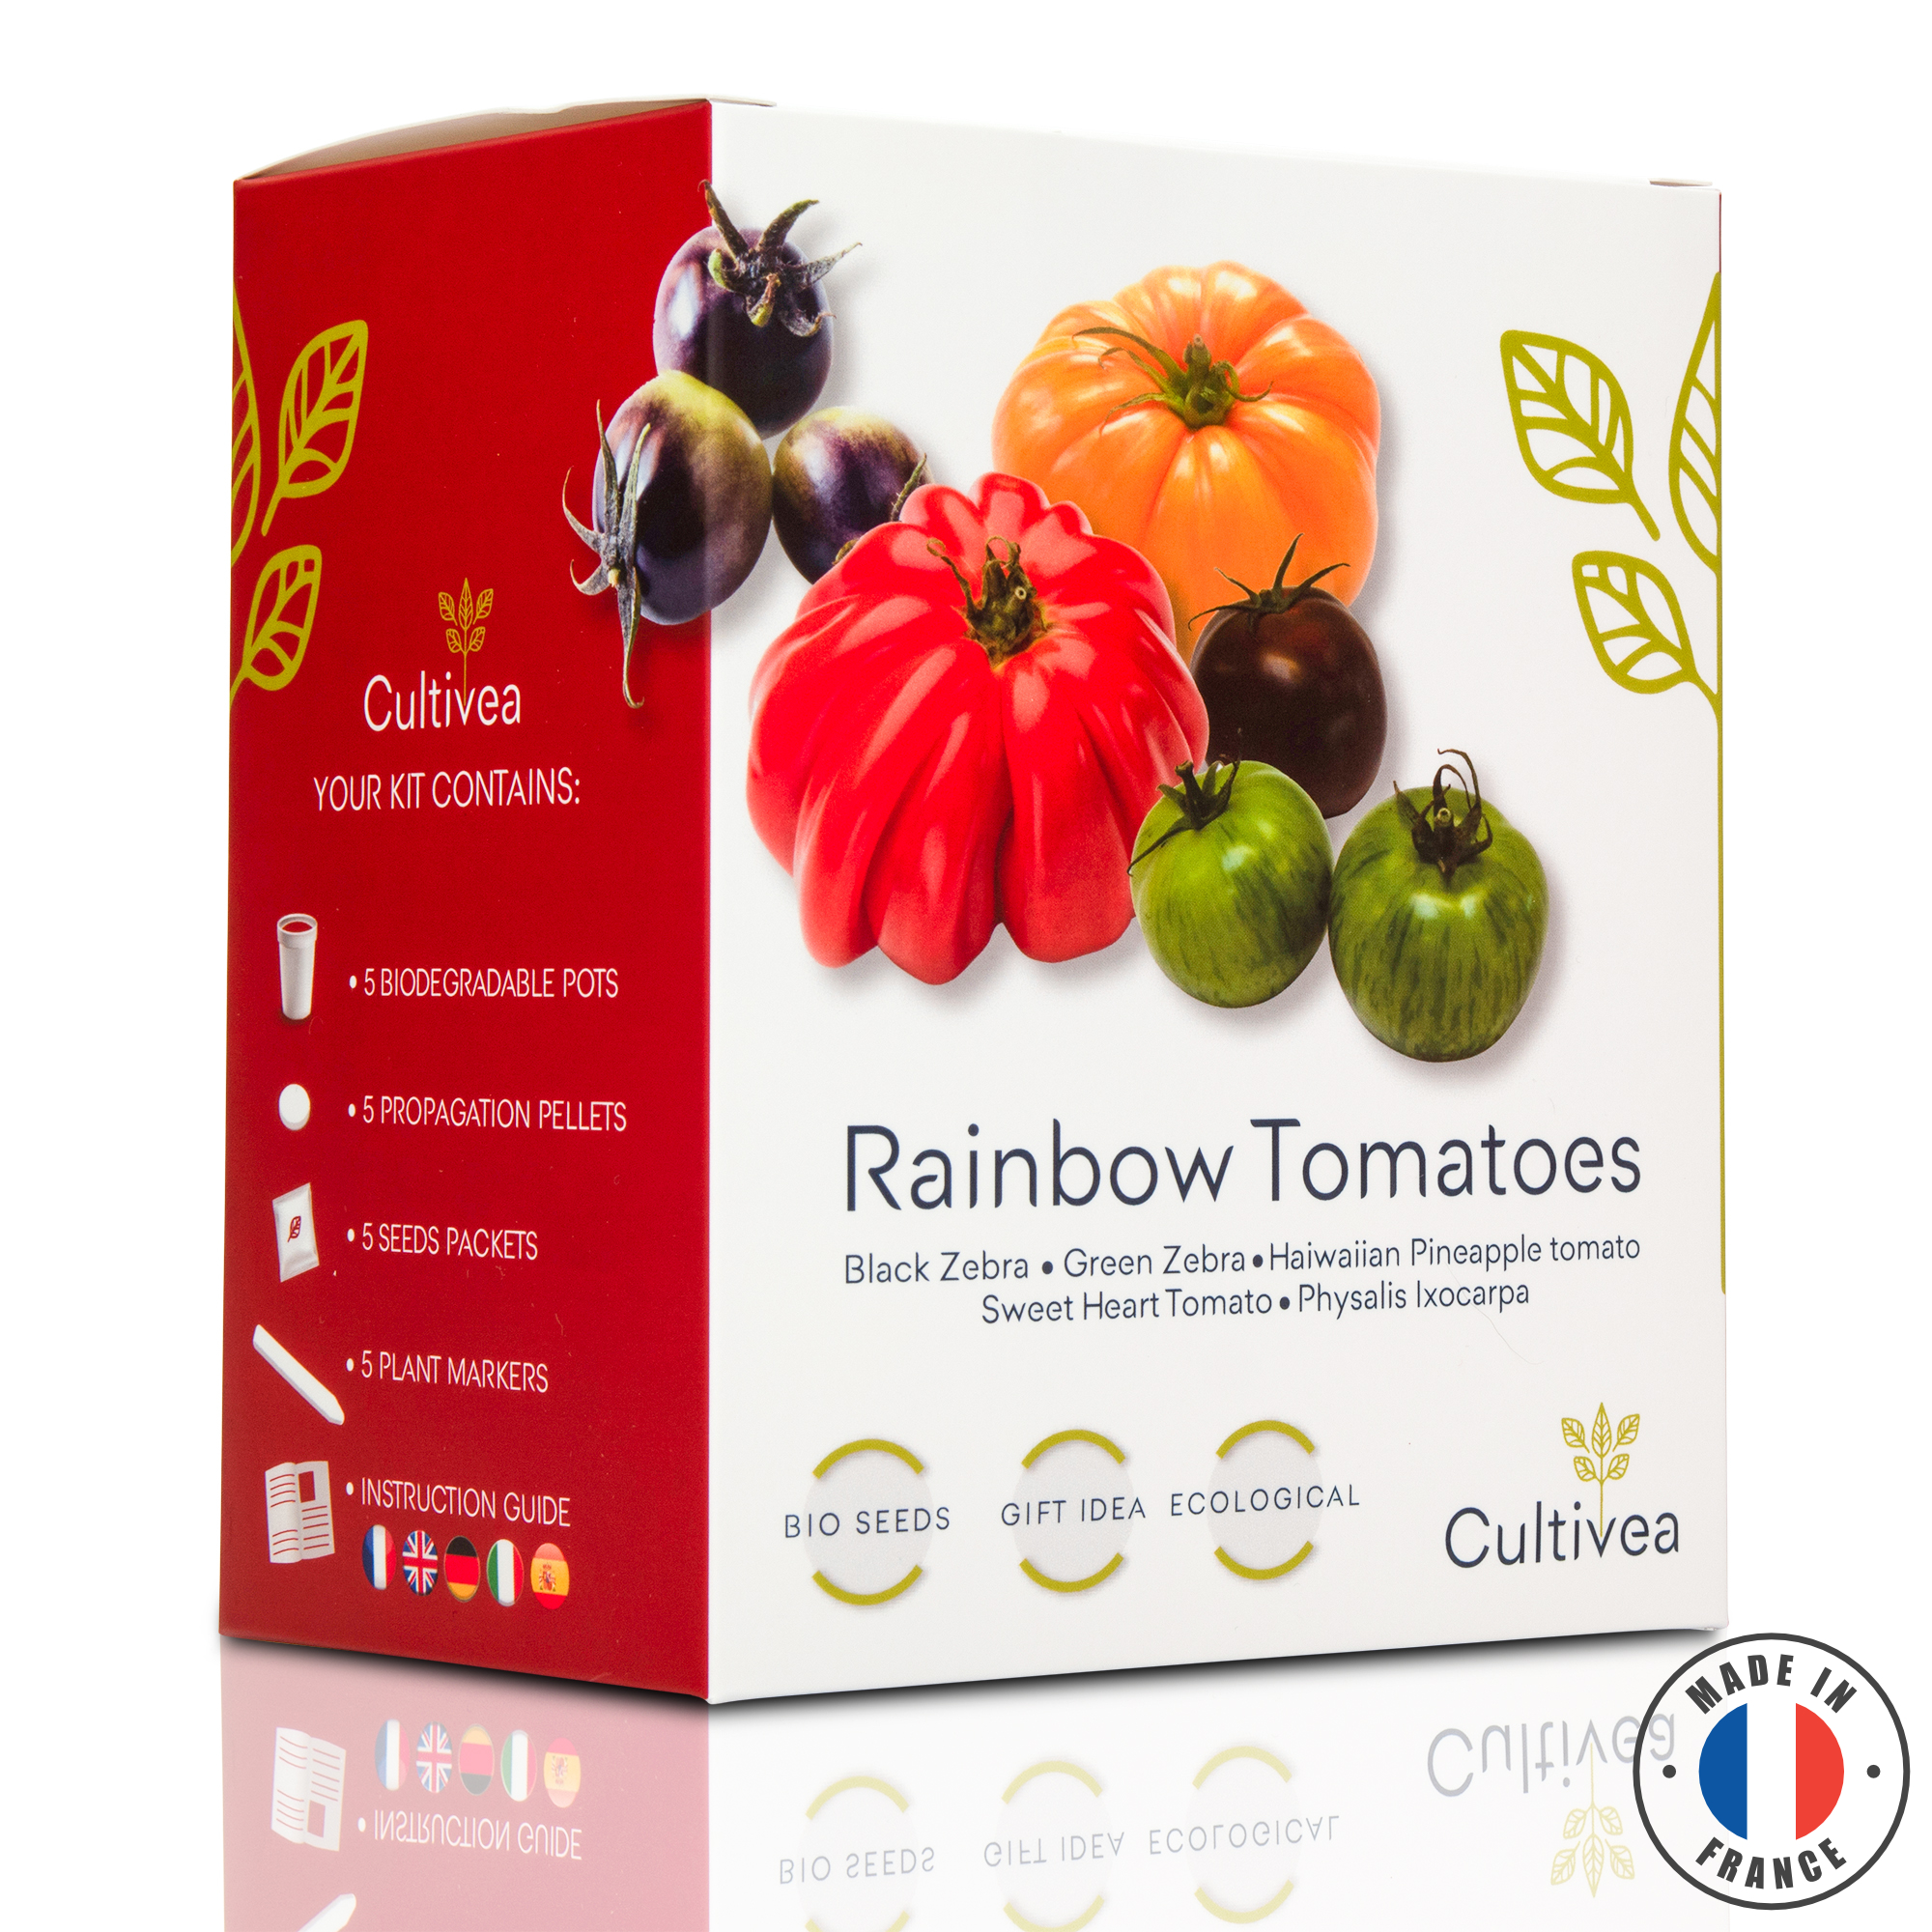 Cultivea tomates colorées - graines bio